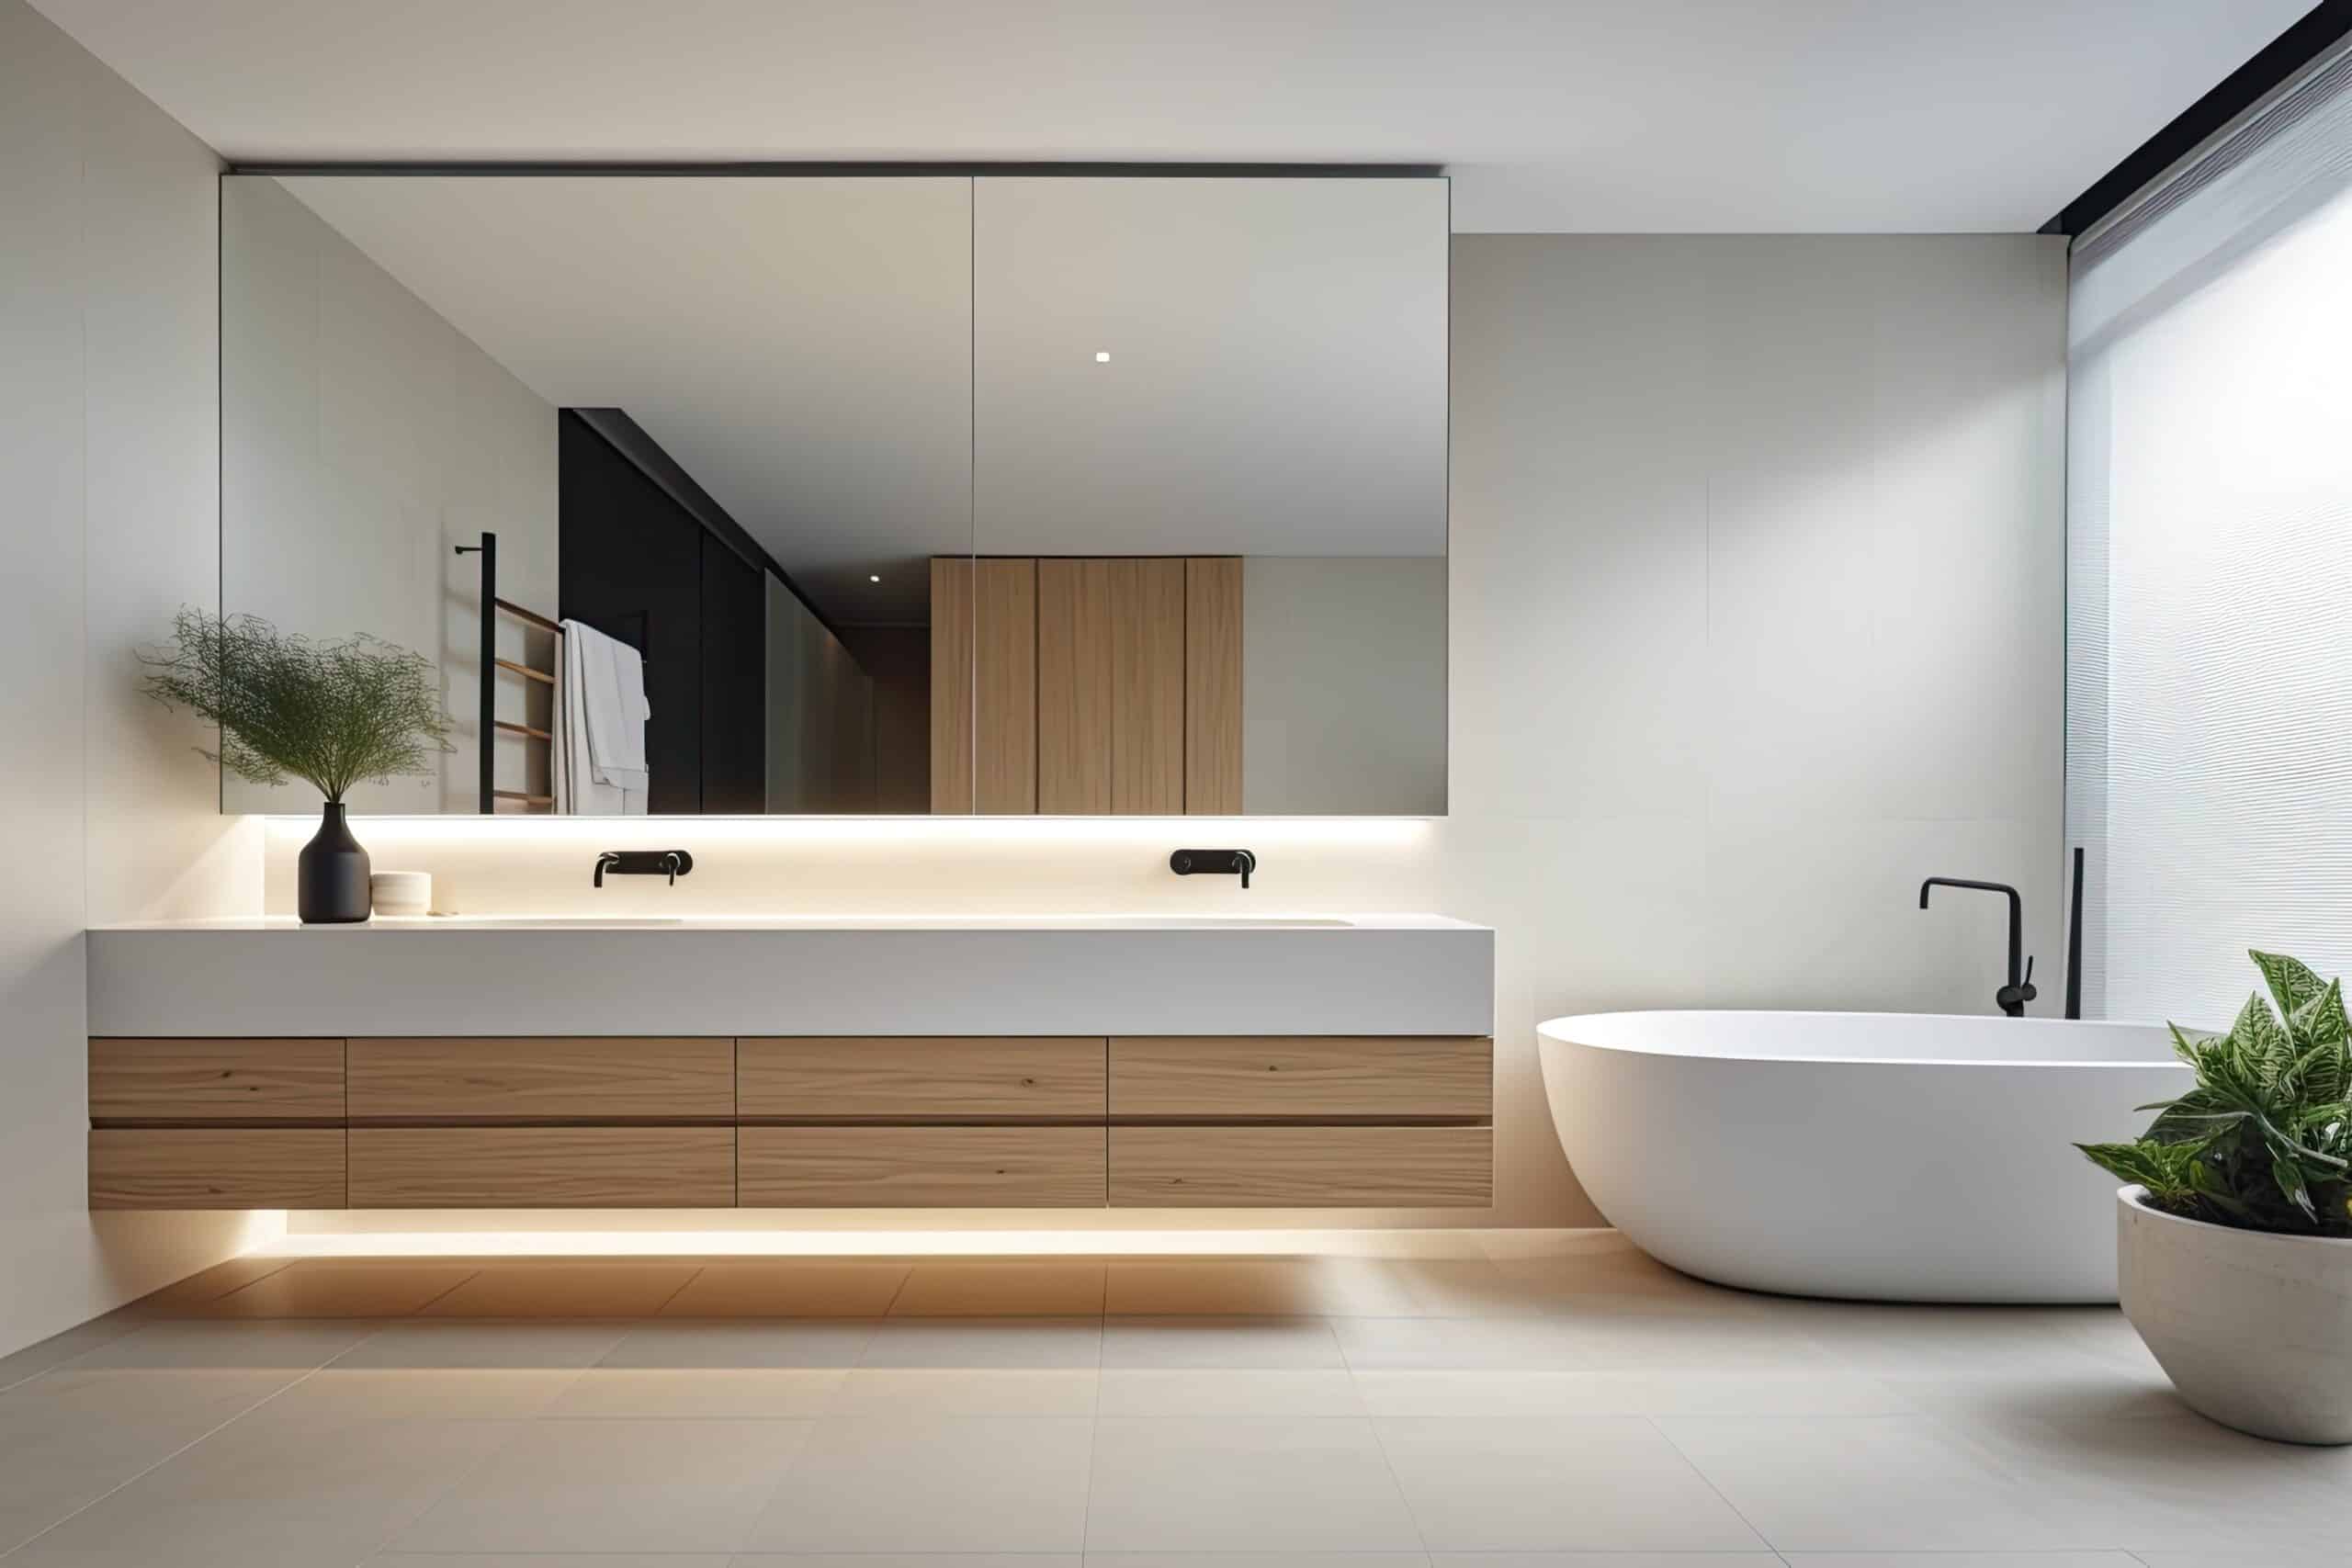 Salle de bain minimaliste avec des lignes épurées, une vanité flottante et un grand miroir, mettant en valeur une esthétique moderne et épurée